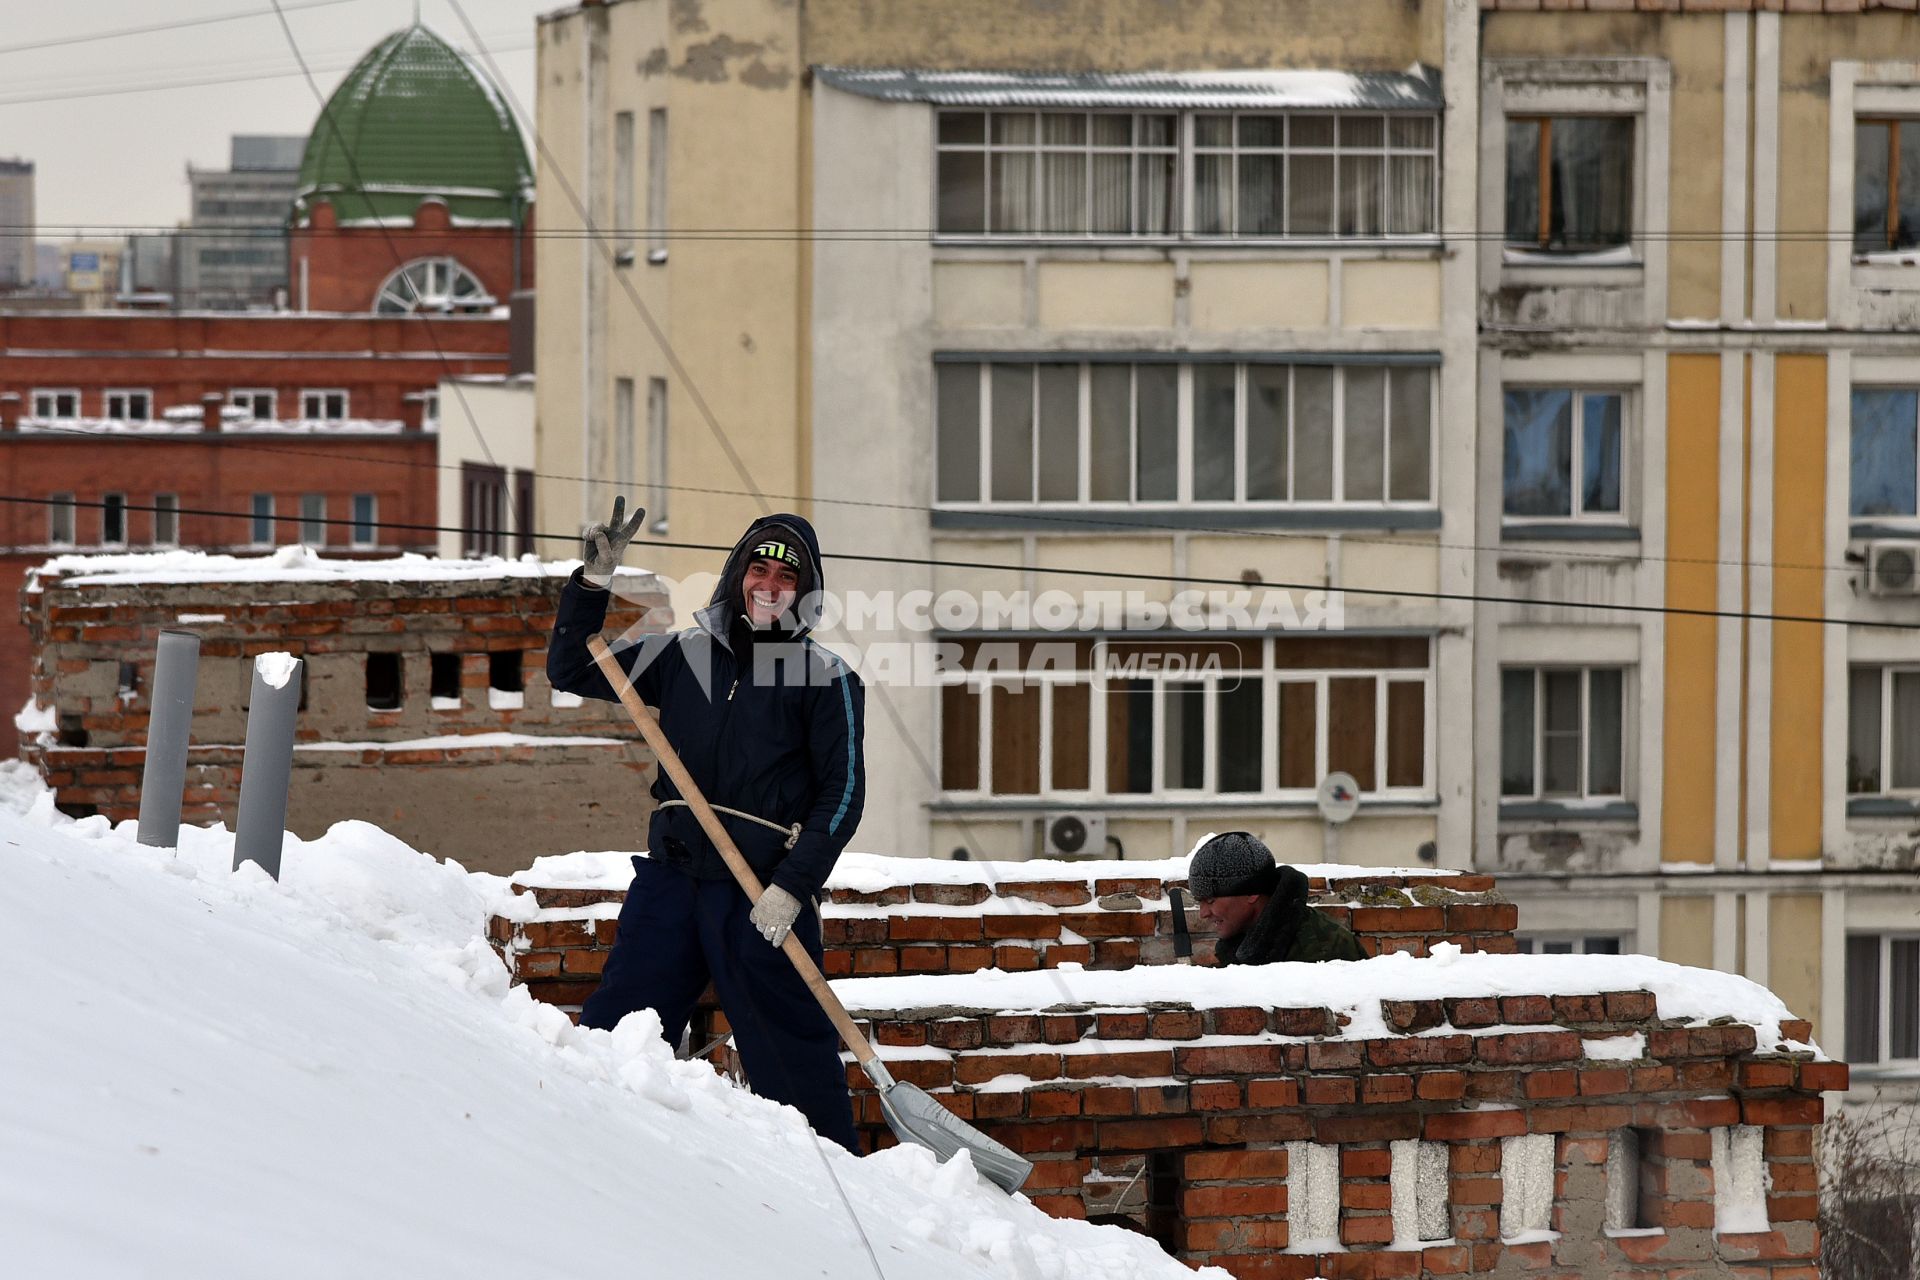 Новосибирск. Дворник на крыше лопатой счищает снег.